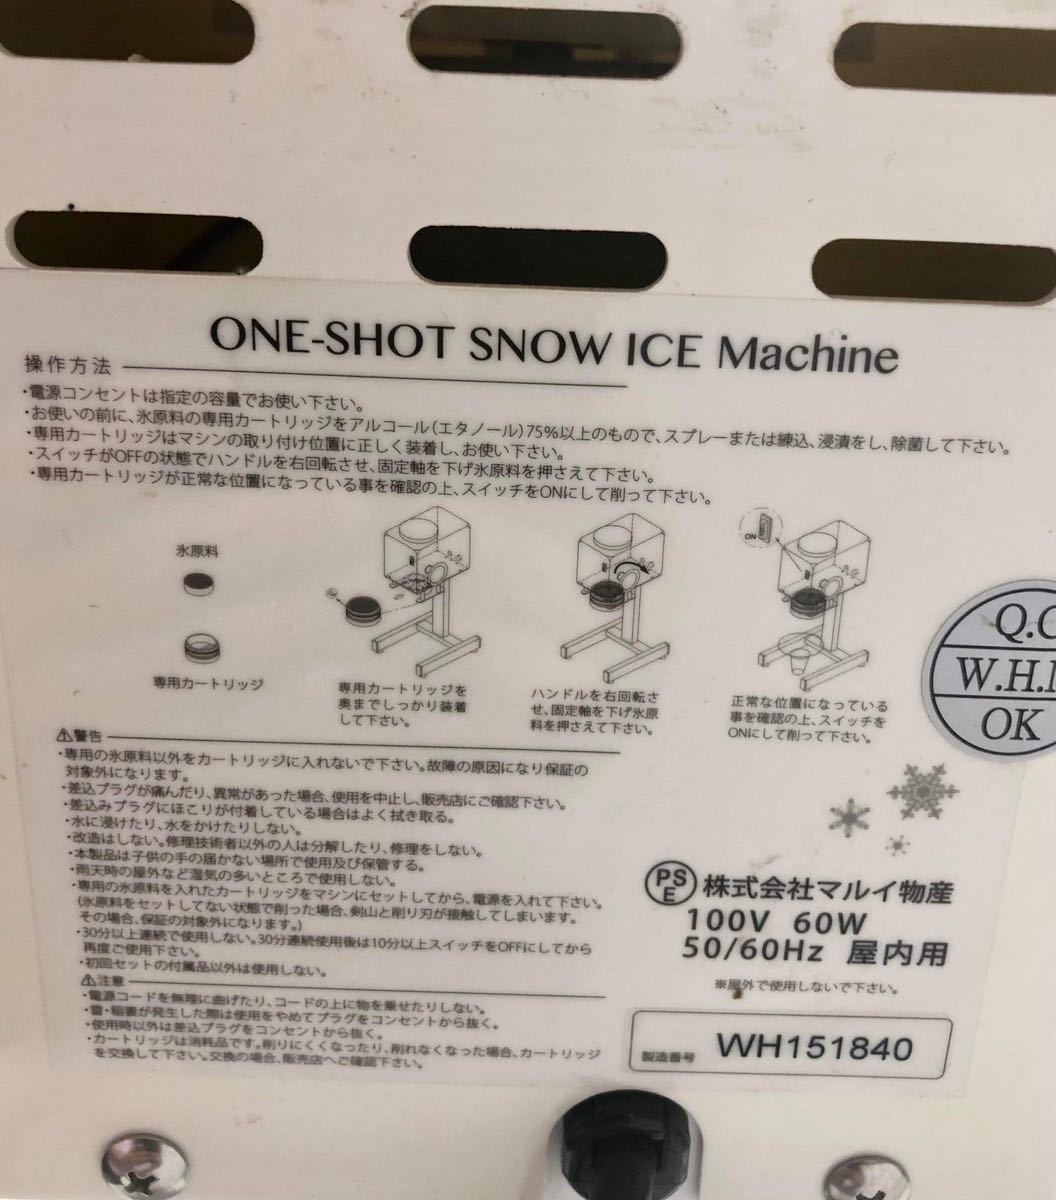 BIG SALE ** рекомендация ** ONE- SHOT SNOW USED ICE MACHINE 50/69HZ 100V one Schott машина для колки льда 50/60HZ 100V б/у.